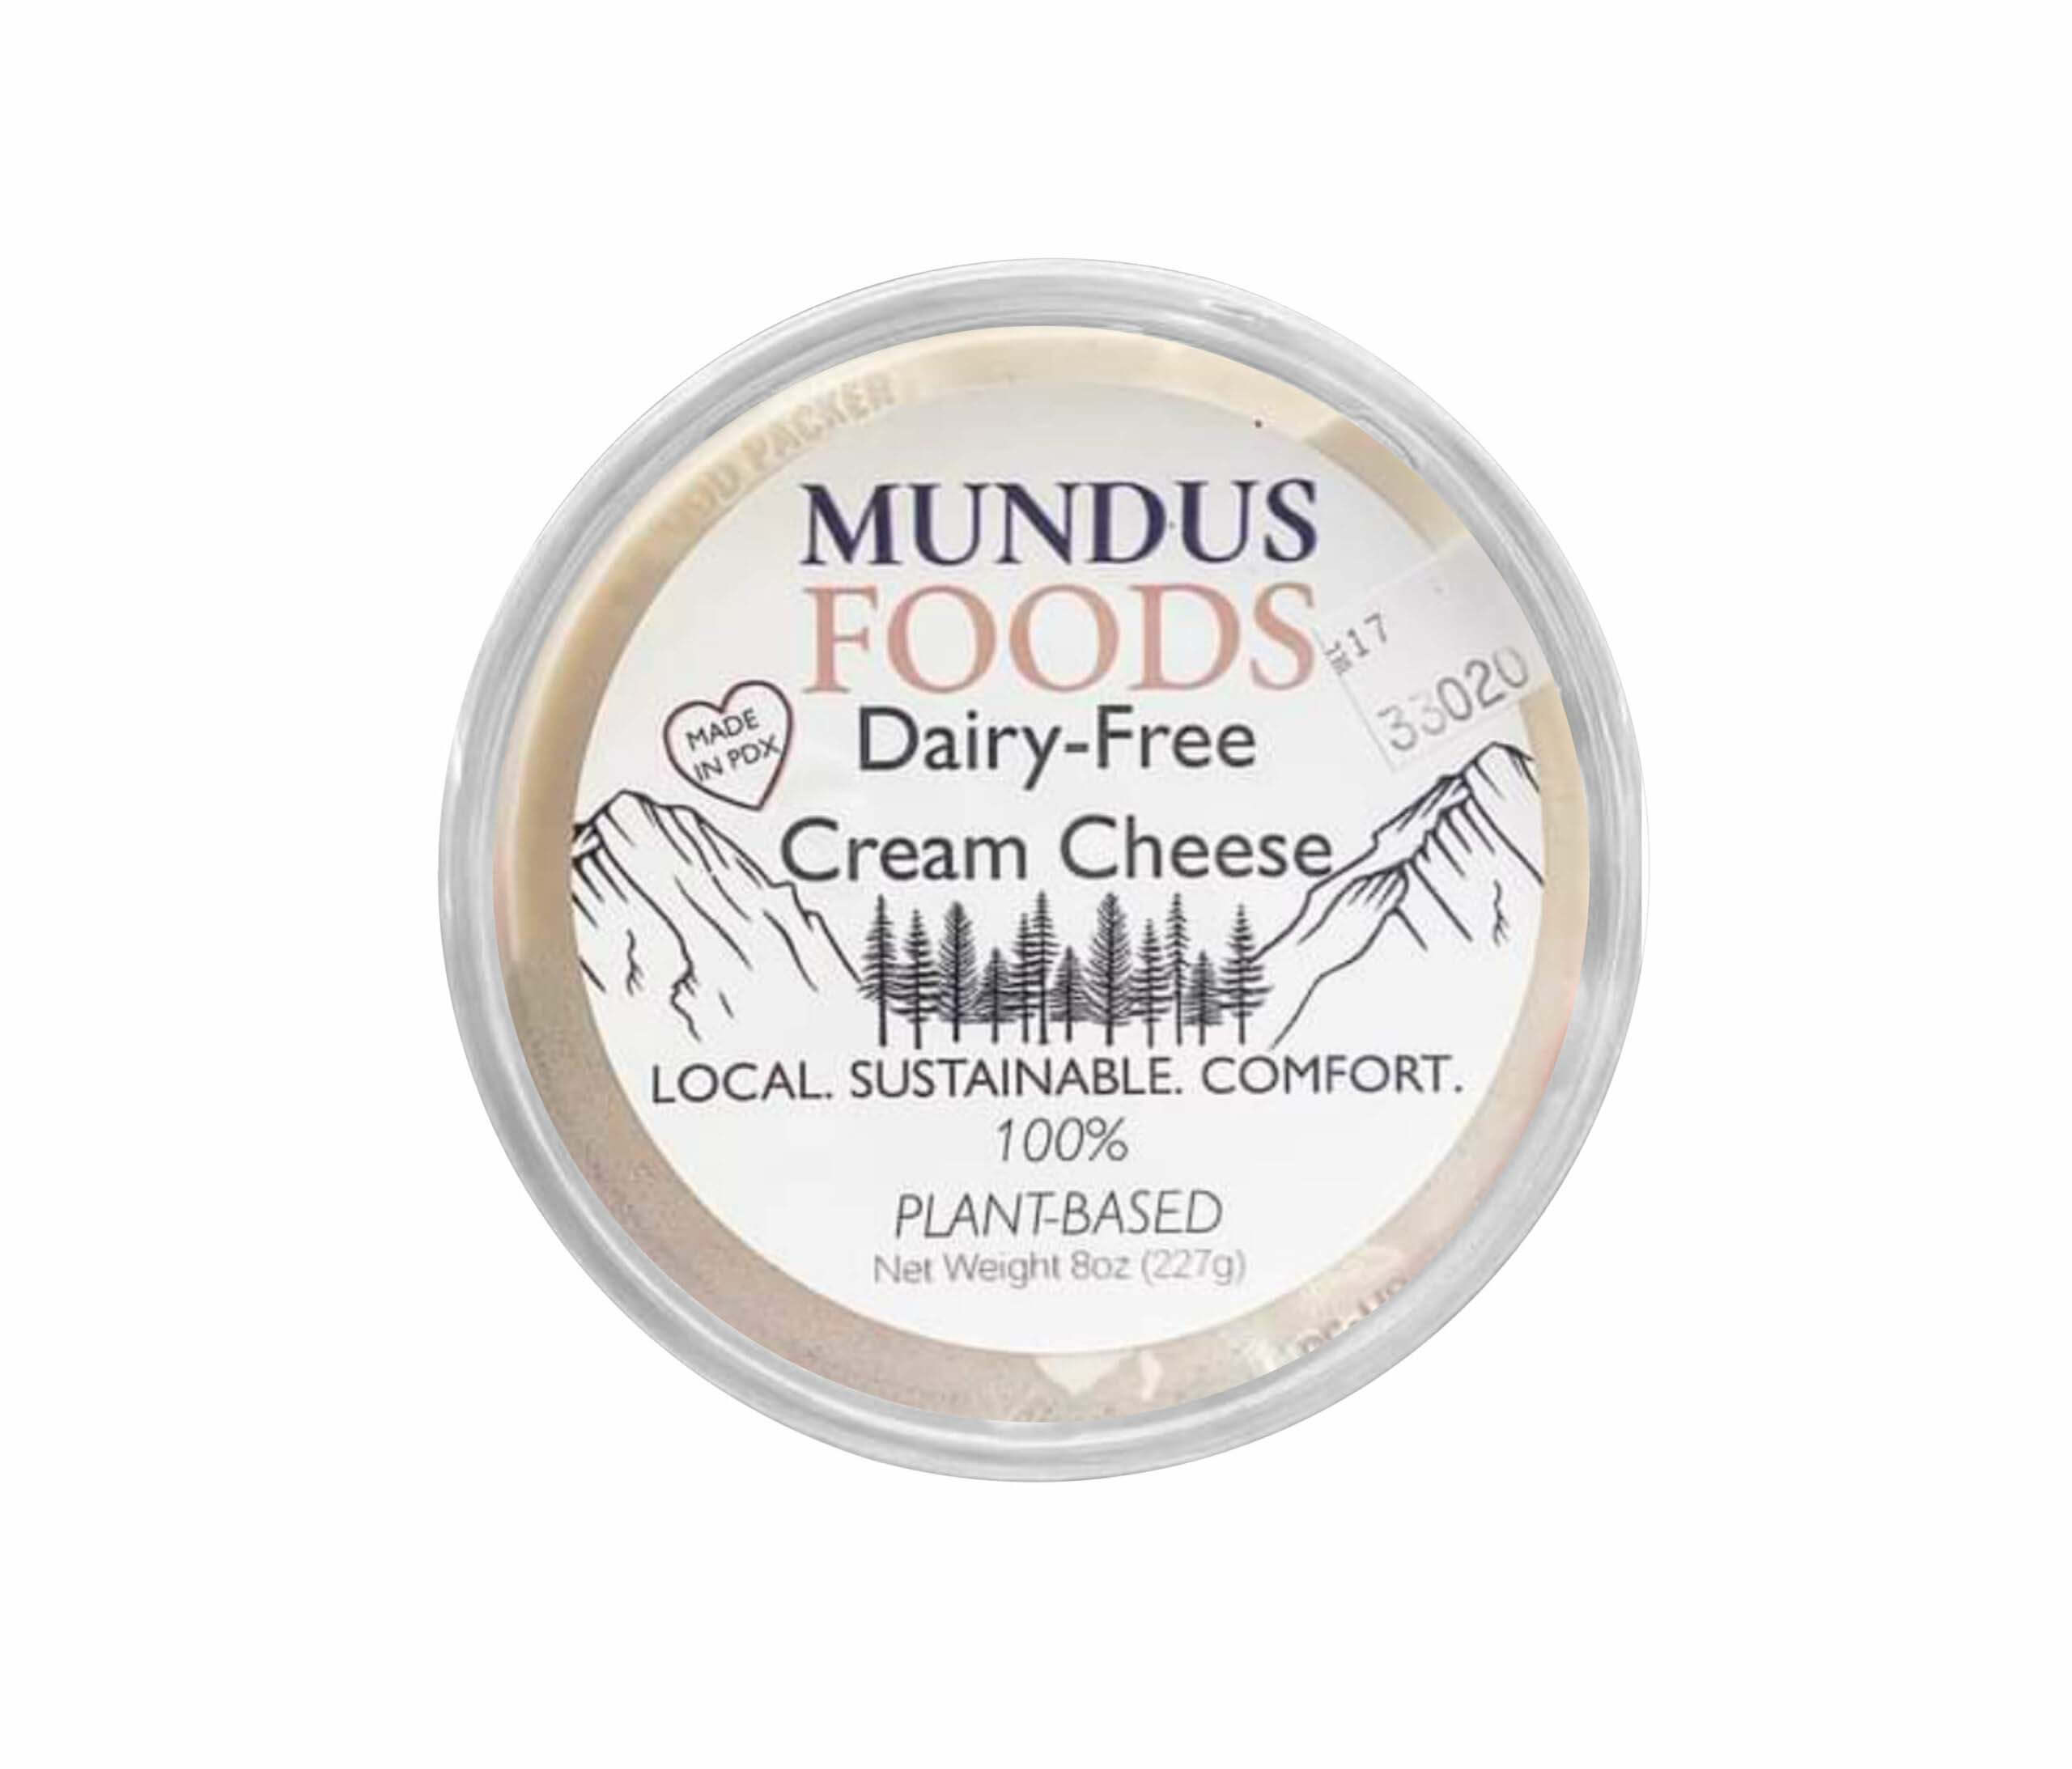 Mundus Foods